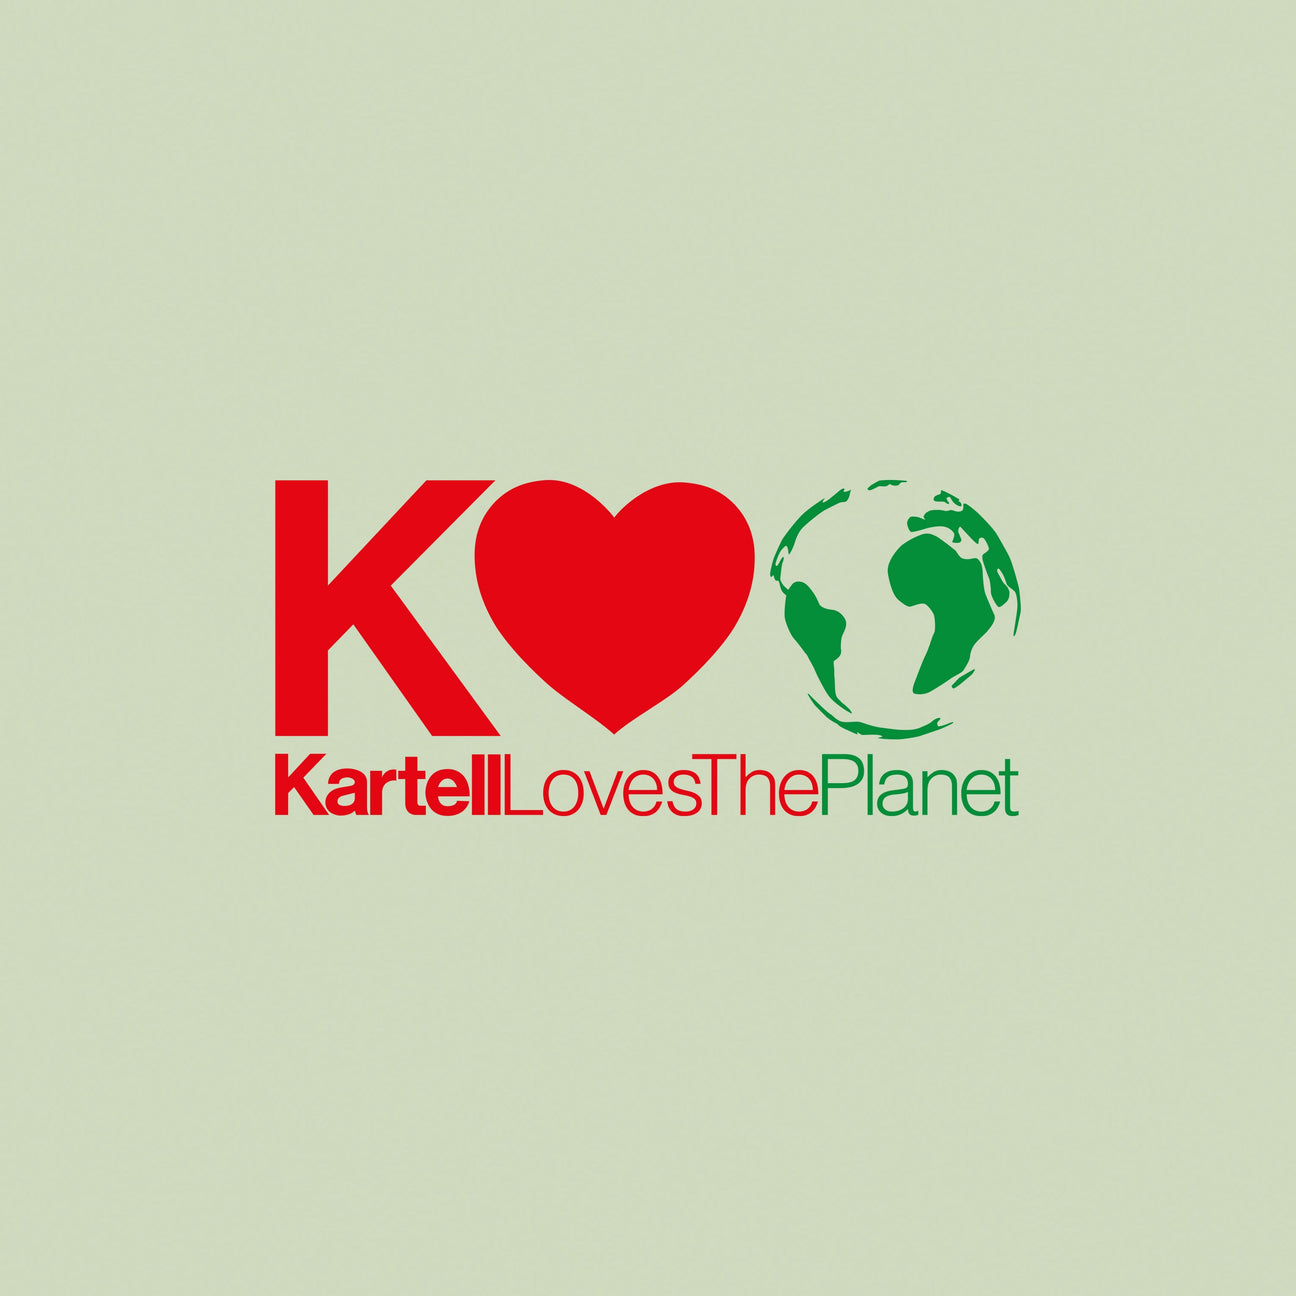 KARTELL LOVES THE PLANET